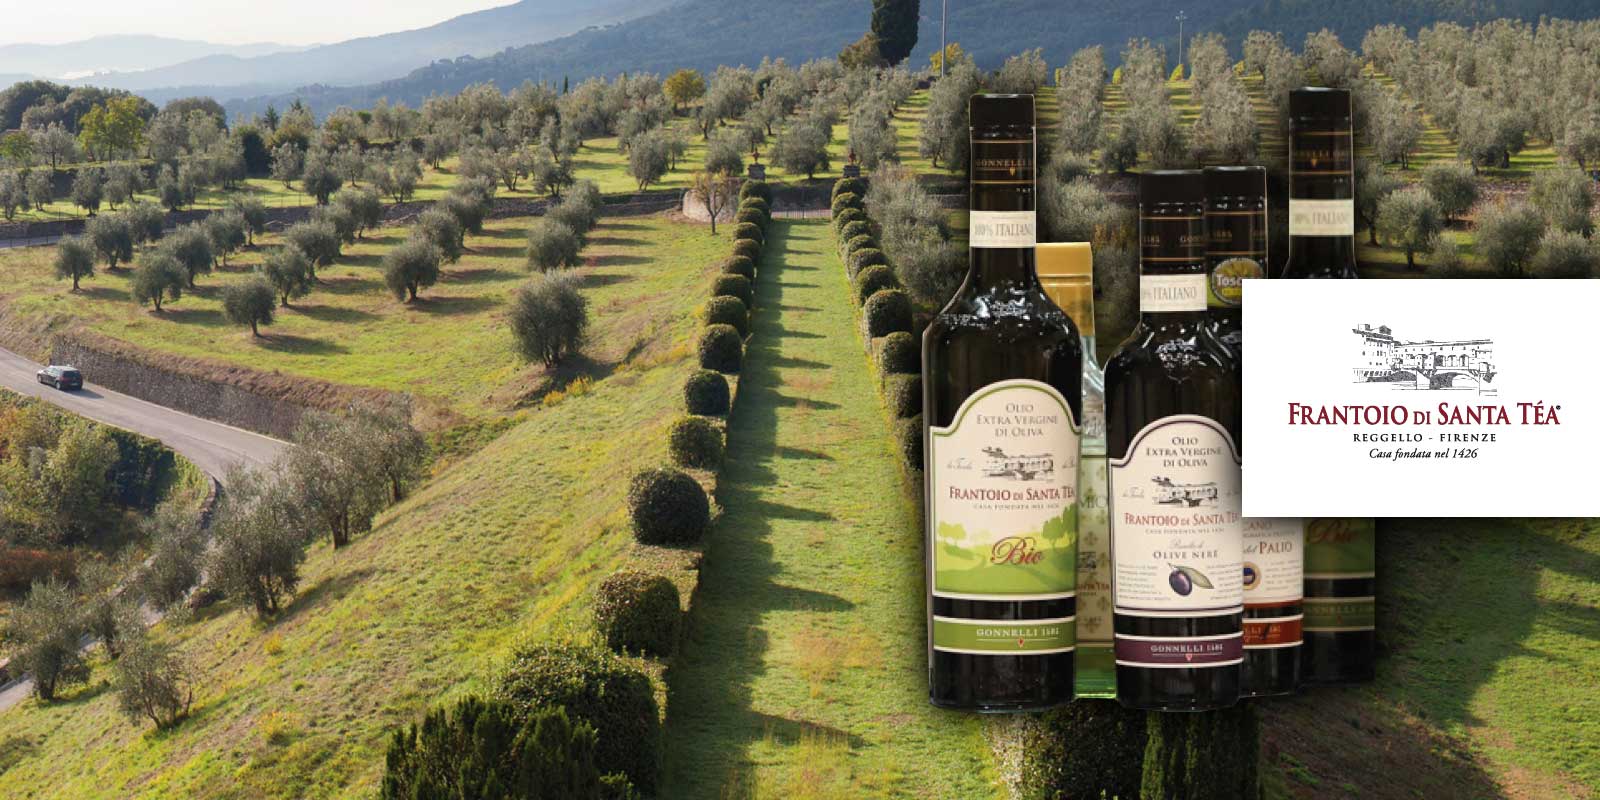 Gonnelli Frantoio di Santa Tea 1585 Olivenöl aus der Toskana Gonnelli 1585 ist eine Marke, die die Beziehung zwischen der Familie Gonnelli und der Welt der traditionellen Ölproduktion darstellt. Im Jahr 1585 kaufte die Familie die Farm von Santa Tea und die dazugehörige Ölmühle, die 1426 erbaut wurde. Heute ist die Firma, Besitzer der Mühle Vertine im Chianti Classico, eine der italienischen Spitzenleistungen in der Welt des nativen Olivenöls. Die Philosophie war immer, ein gesundes, echtes und natürliches Olivenöl anzubieten.
Gonnelli 1585, das mehrere Meilensteine in der Branche erreicht hat und kontinuierlich die Bedeutung von Olivenöl als Lebensmittel mit unzähligen ernährungsphysiologischen und gesundheitsbezogenen Eigenschaften sowie als Träger von Geschmack und Wert in jedem Gericht und in jeder Zubereitung bestätigt hat. Heute bietet Gonnelli 1585 eine breite und vielfältige Produktpalette mit vielen verschiedenen Ölen mit ihren verschiedenen Geschmacksrichtungen und Aromen.